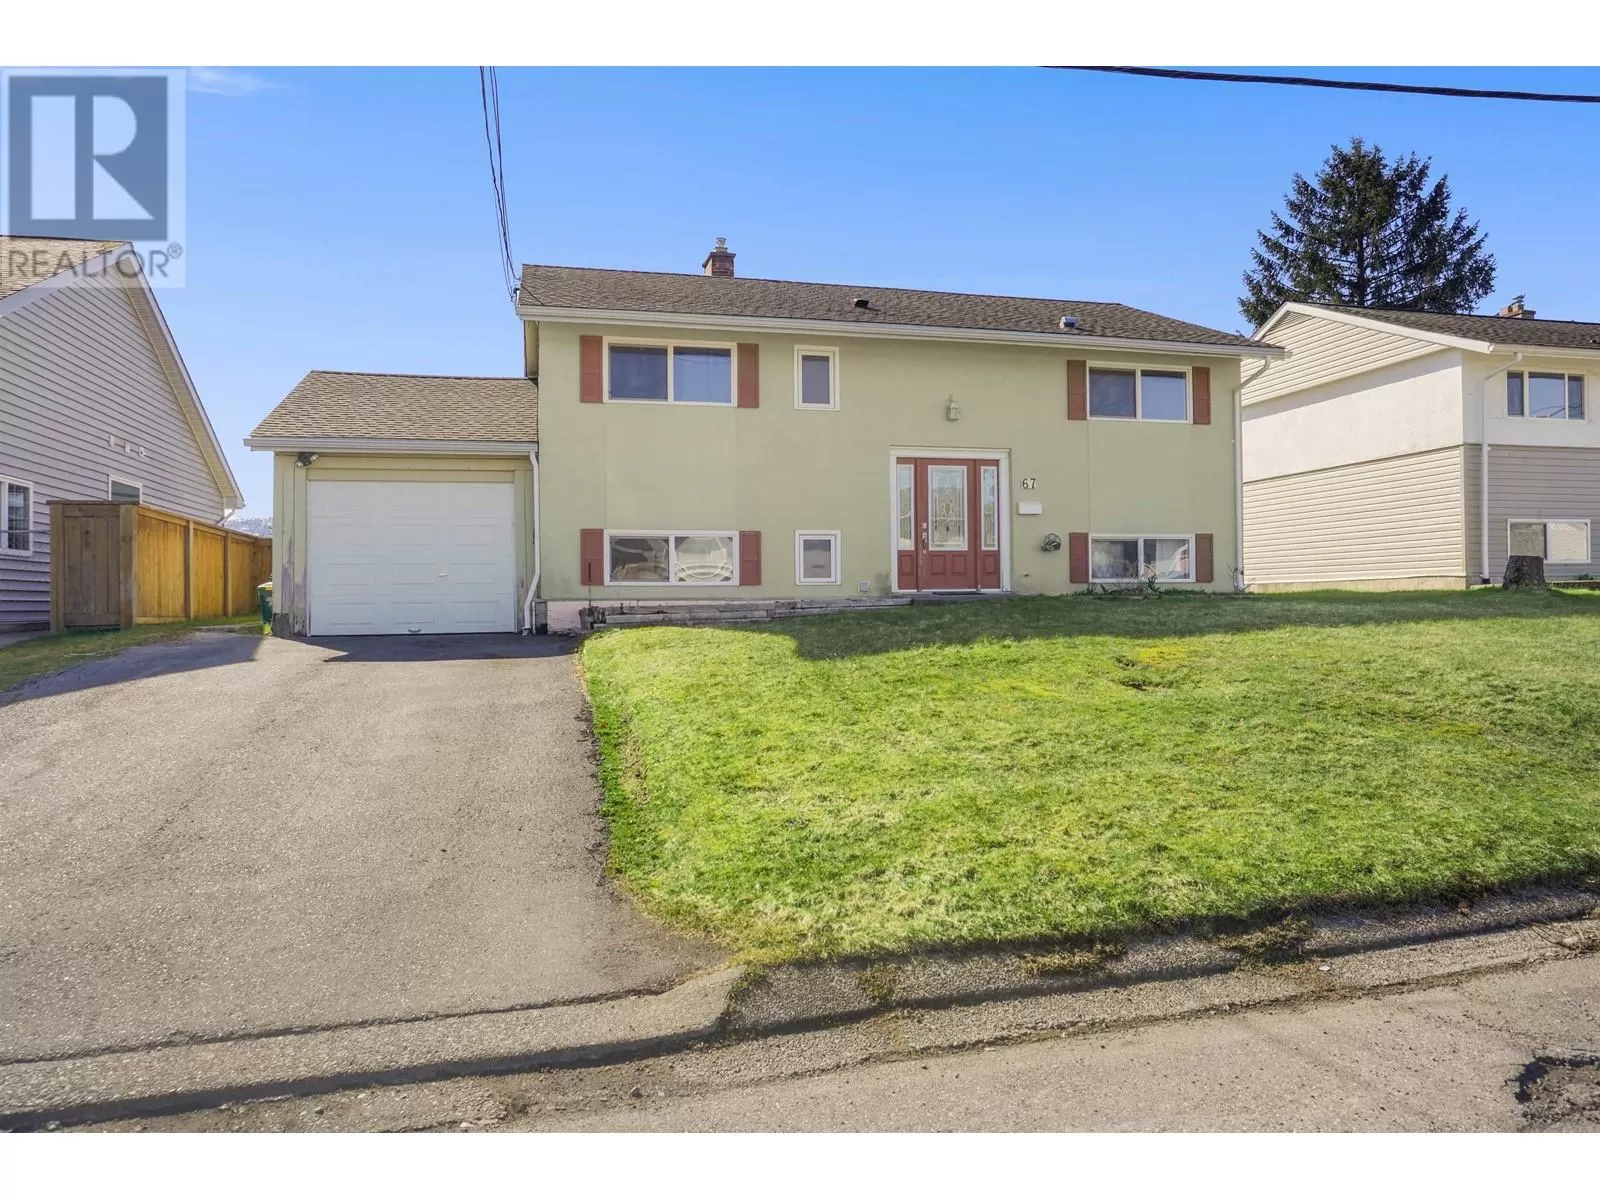 House for rent: 67 White Street, Kitimat, British Columbia V8C 1H9